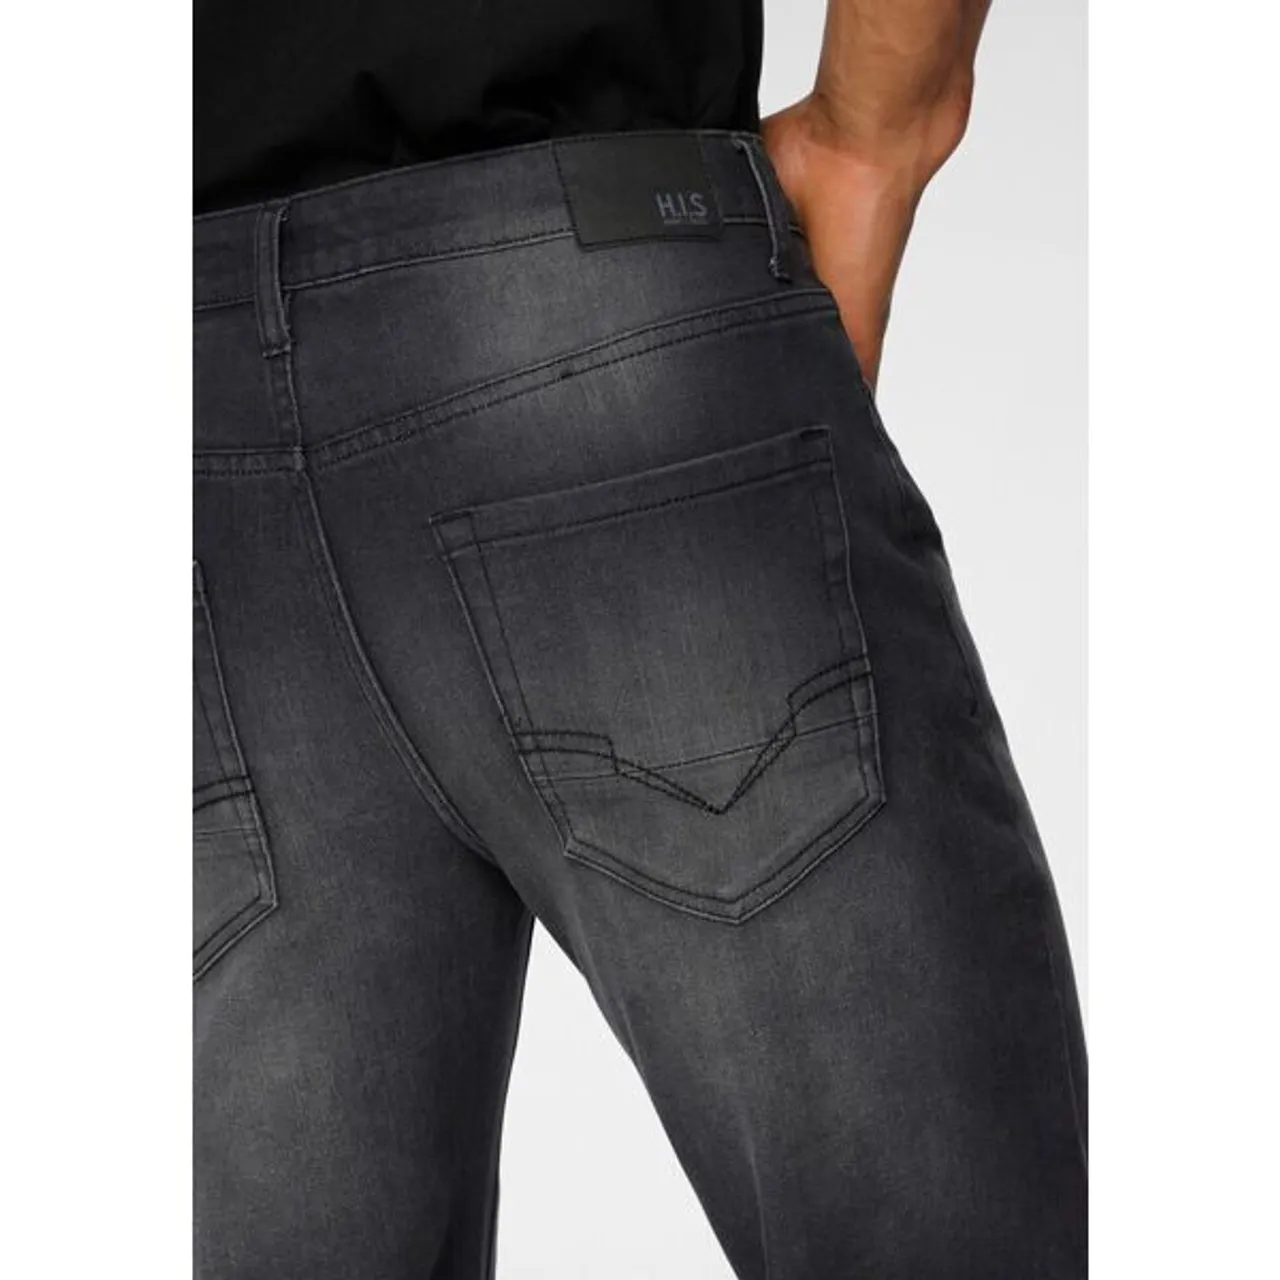 Straight-Jeans H.I.S "DIX" Gr. 36, Länge 34, schwarz (black, used) Herren Jeans Straight Fit Ökologische, wassersparende Produktion durch Ozon Wash